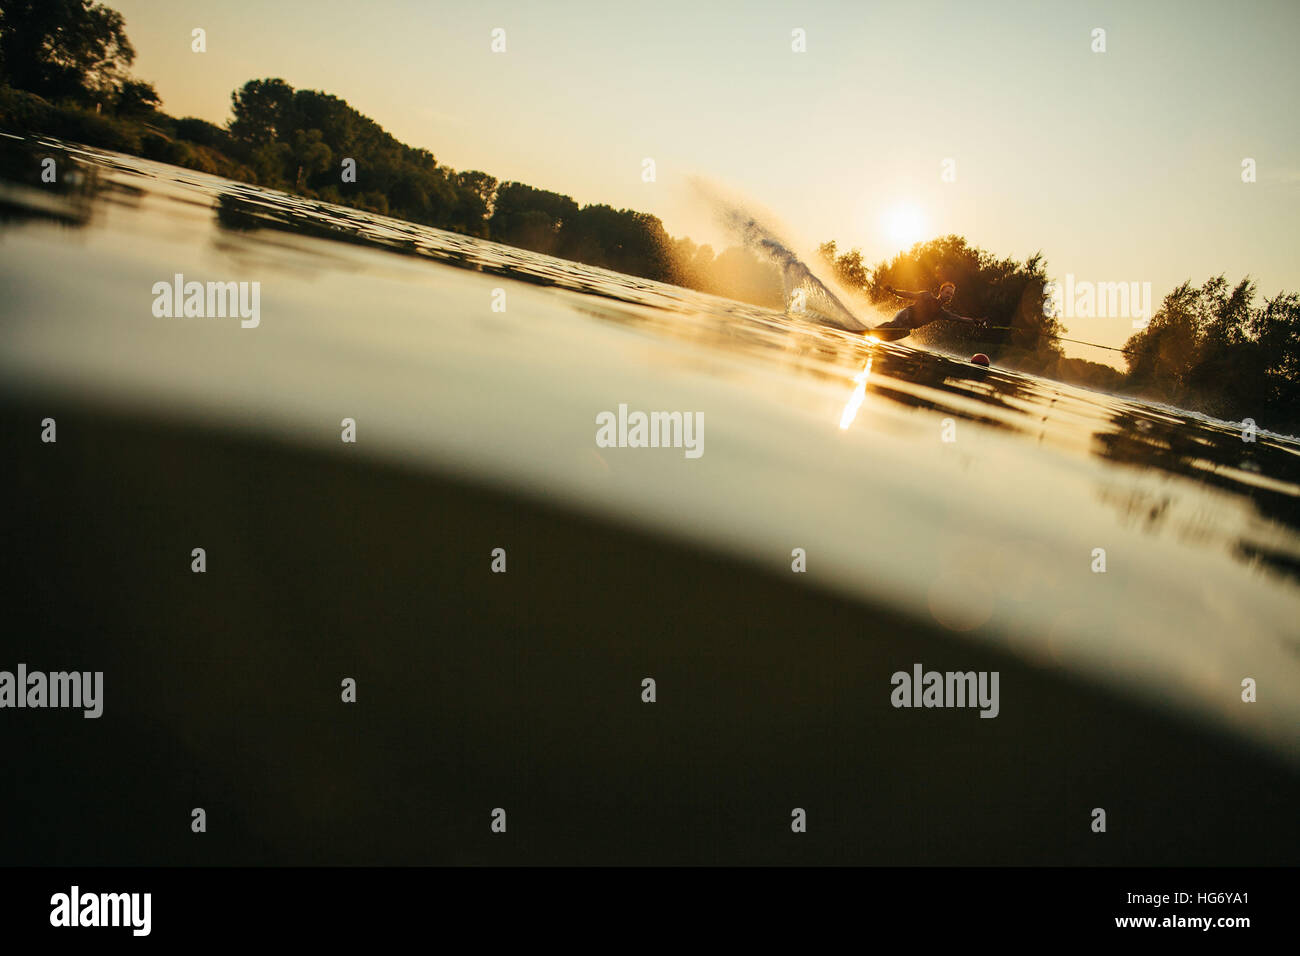 Niedrigen Winkel Schuss des Mannes Wakeboarding an einem See. Wasser-Ski bei Sonnenuntergang. Stockfoto